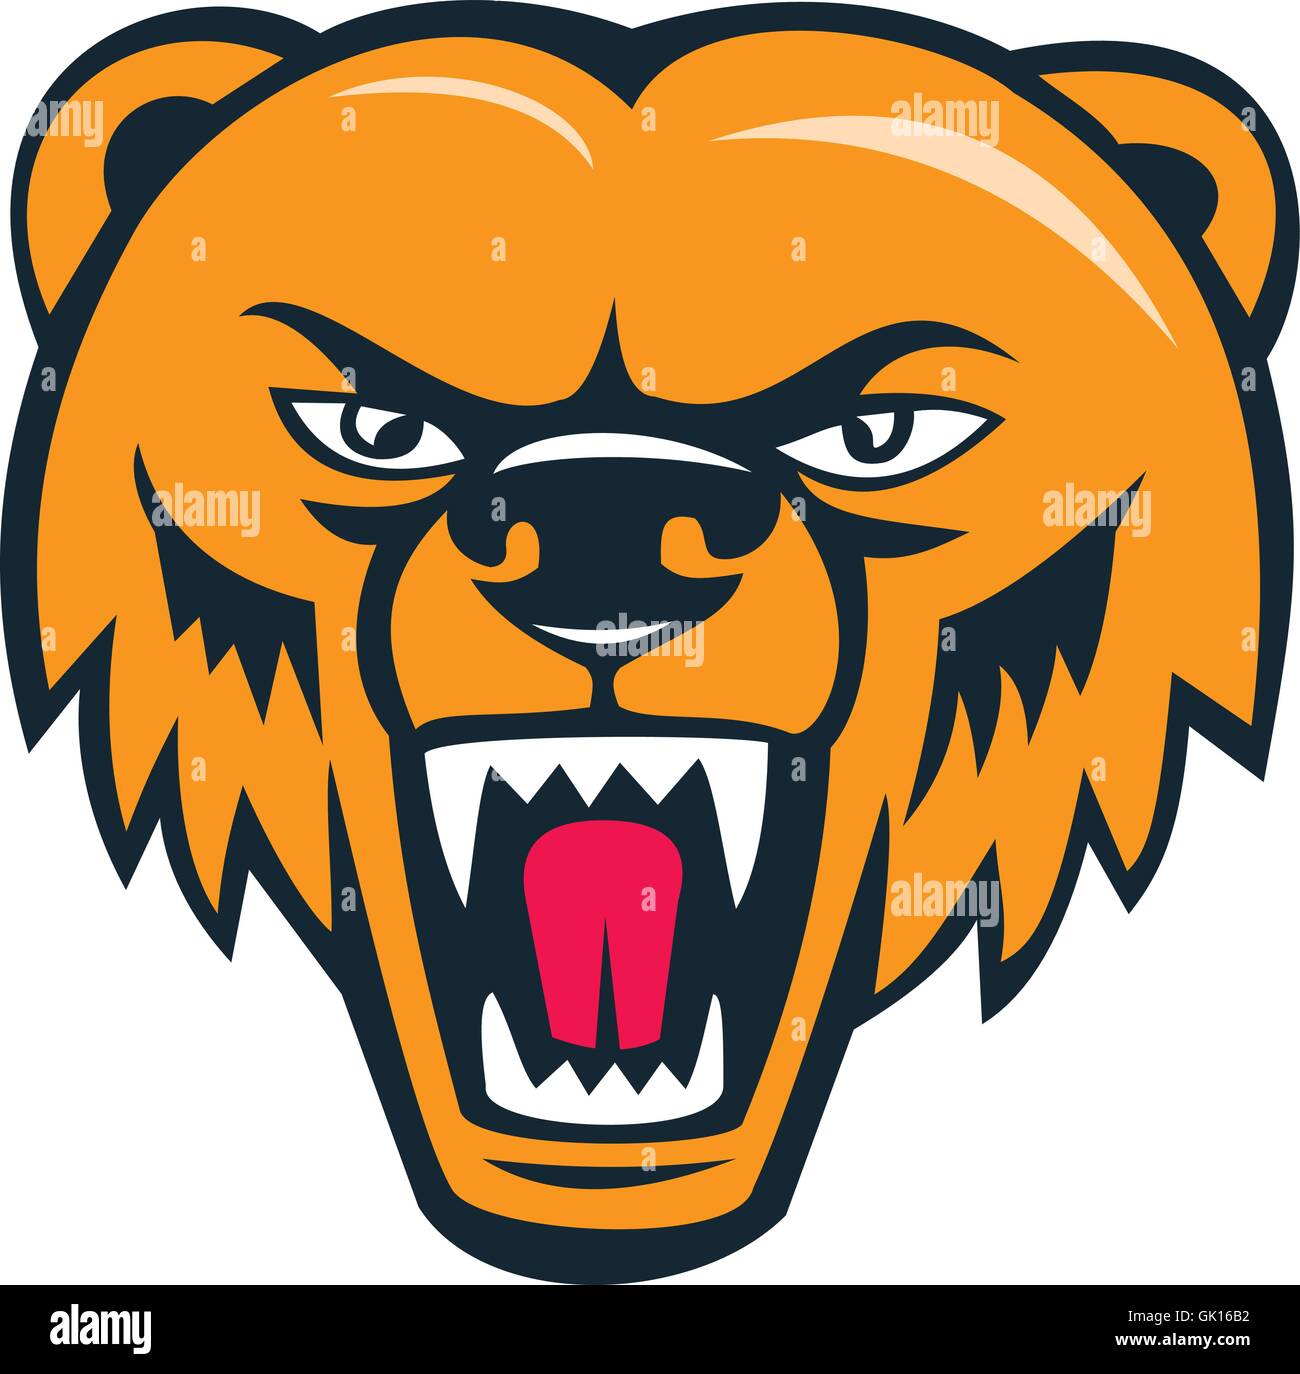 roaring bear clip art